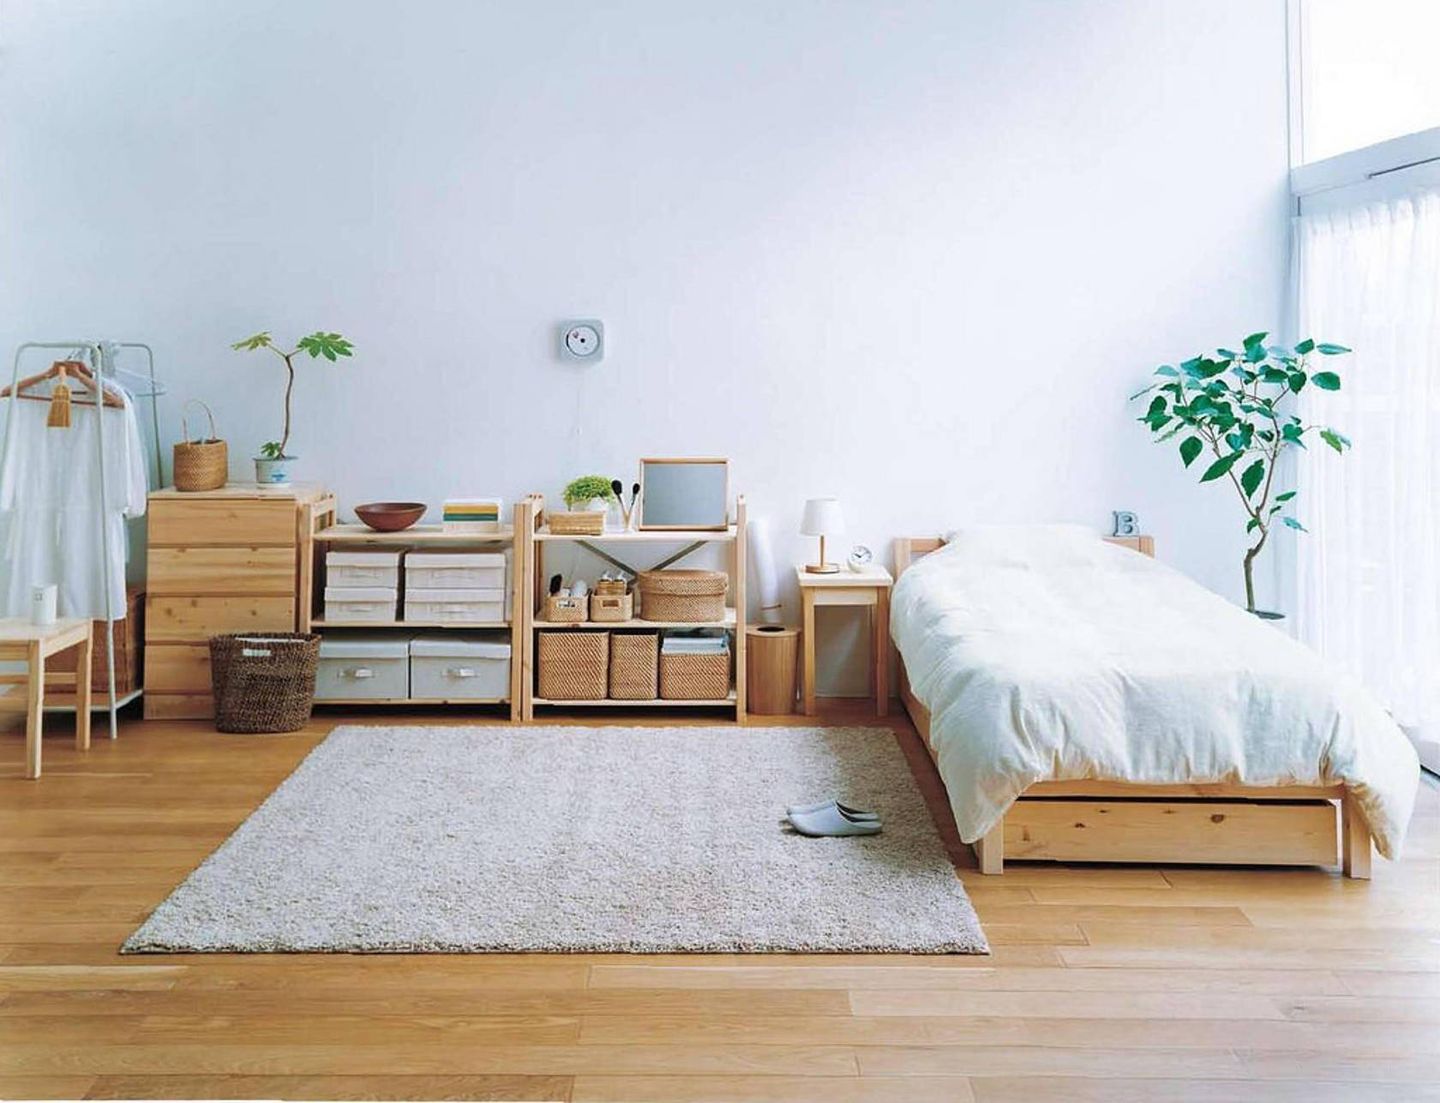 Pertimbangkan kombinasi warna putih dan warna kayu natural untuk kamar tidur dengan luas yang tidak terlalu lebar.